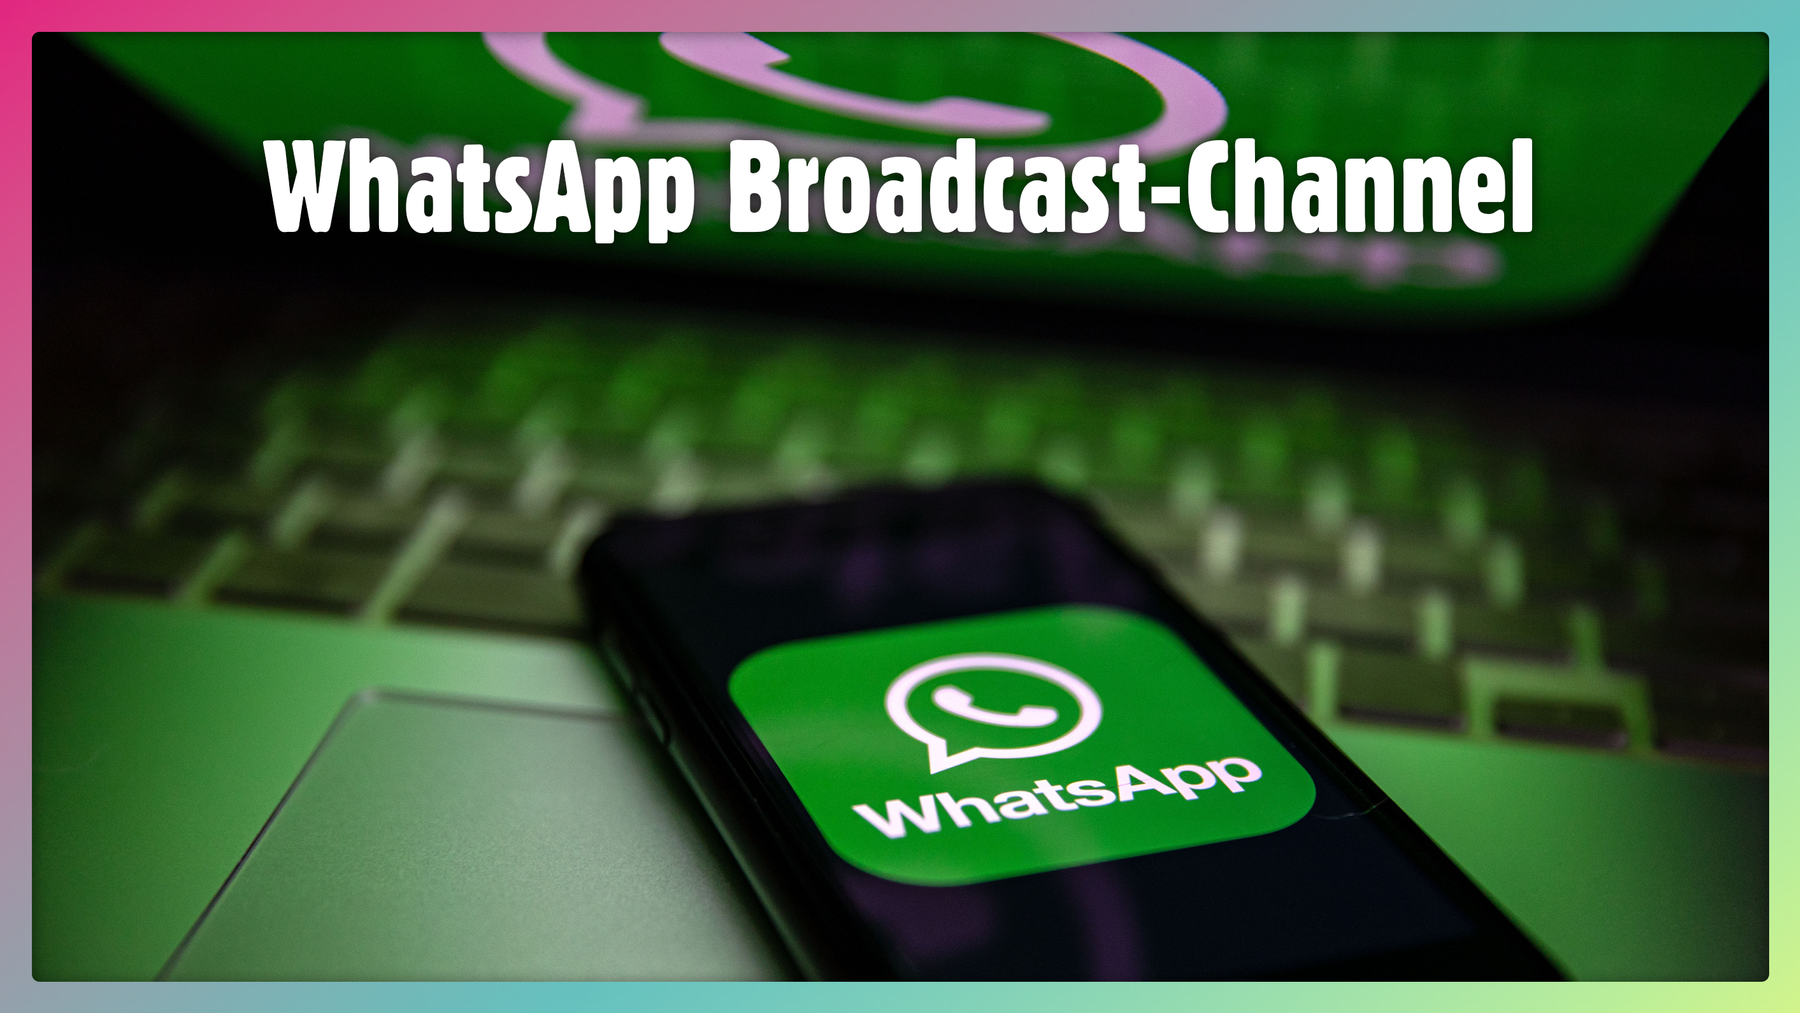 WhatsApp Broadcast-Channel